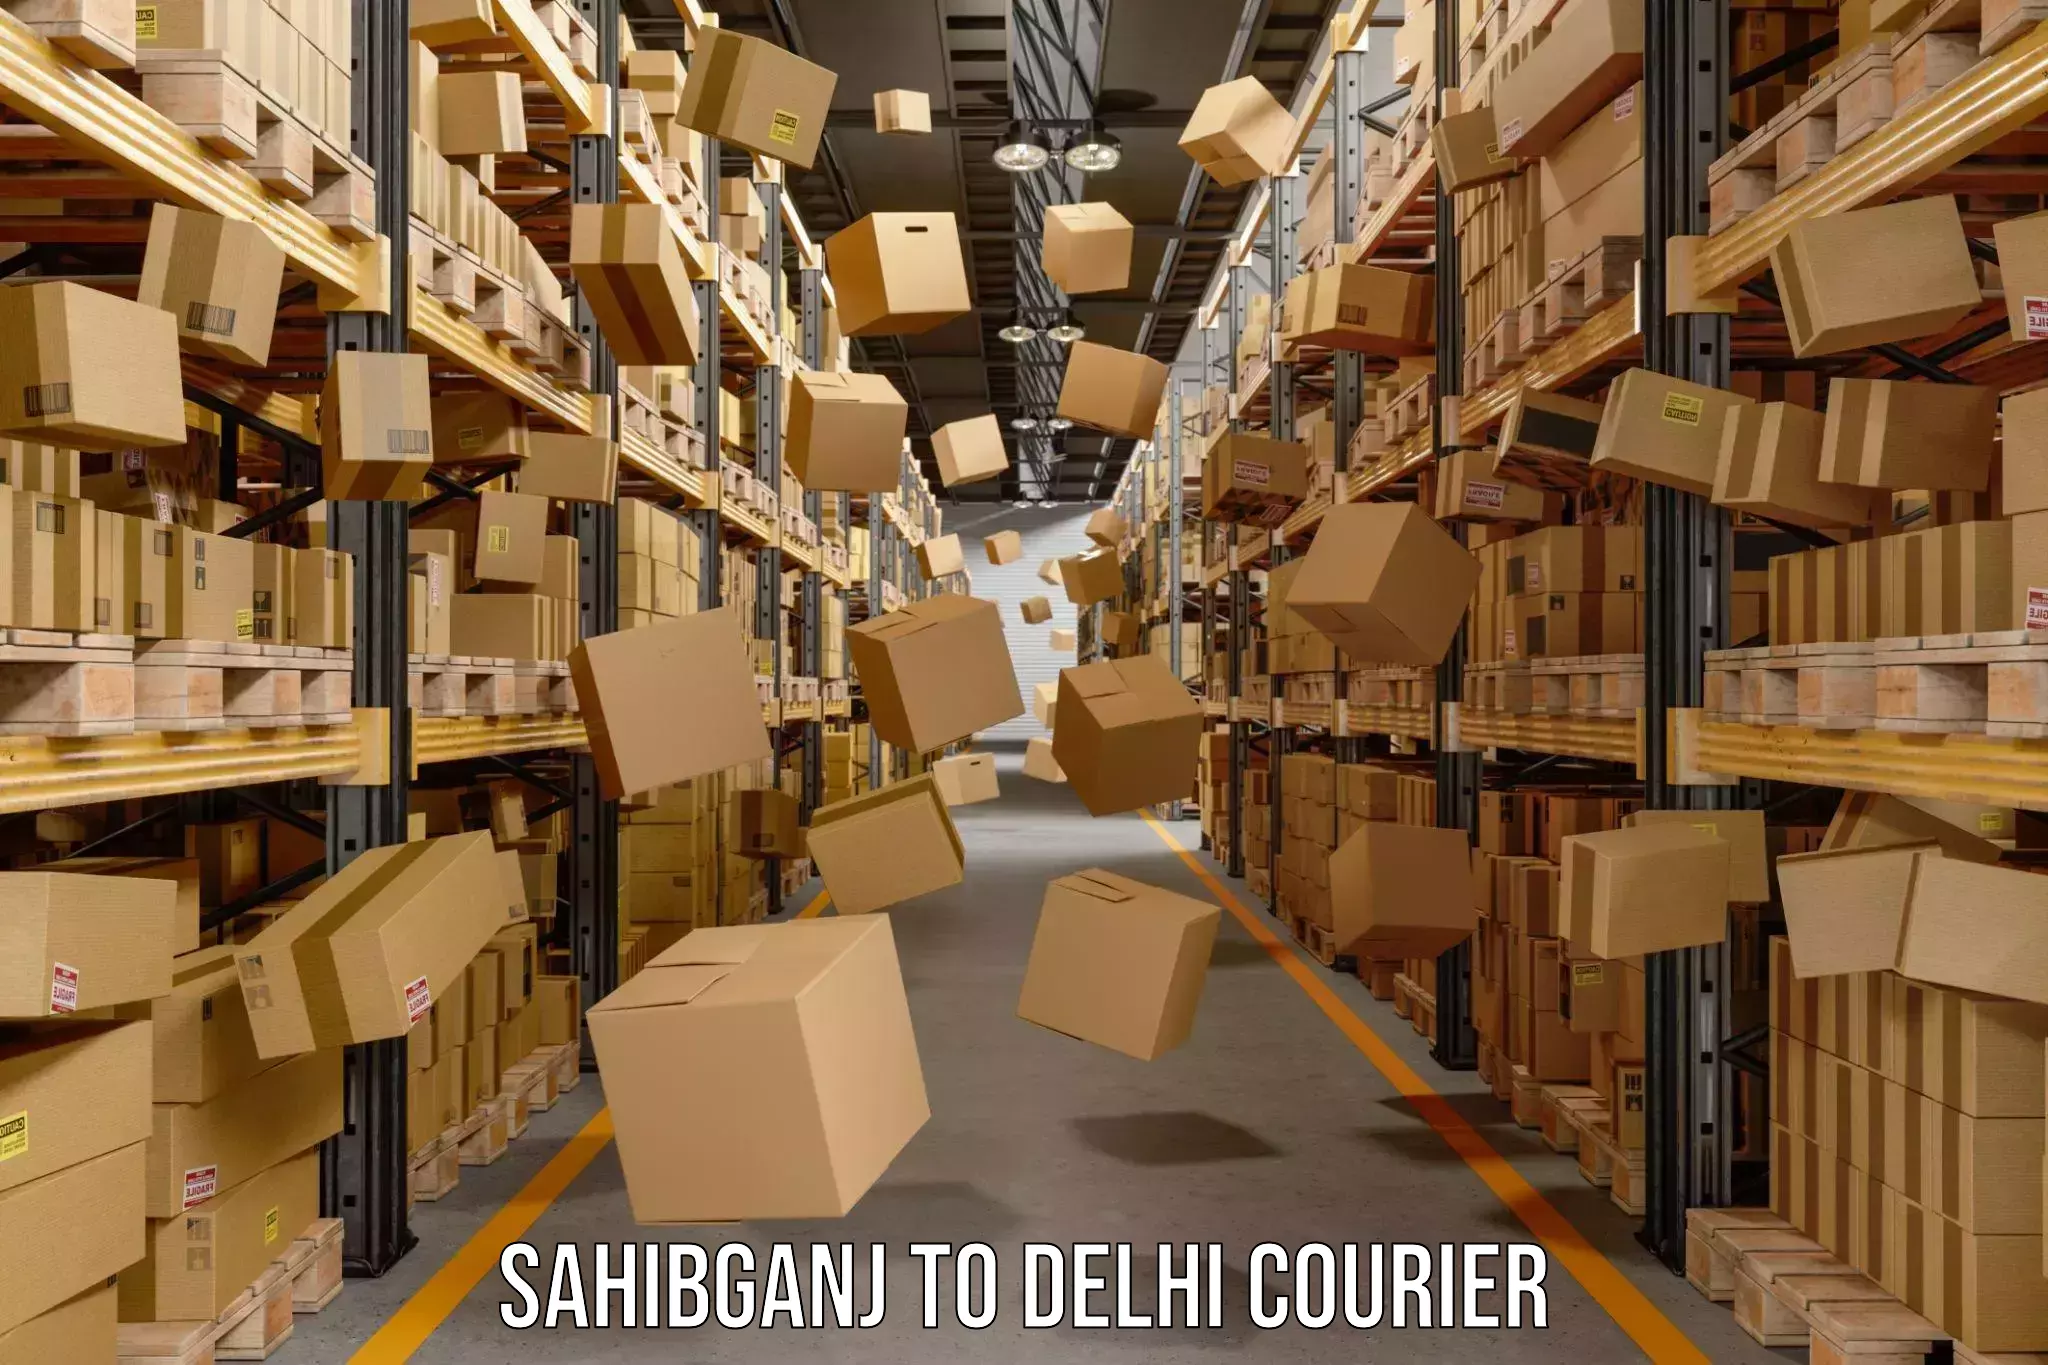 High-priority parcel service Sahibganj to Delhi